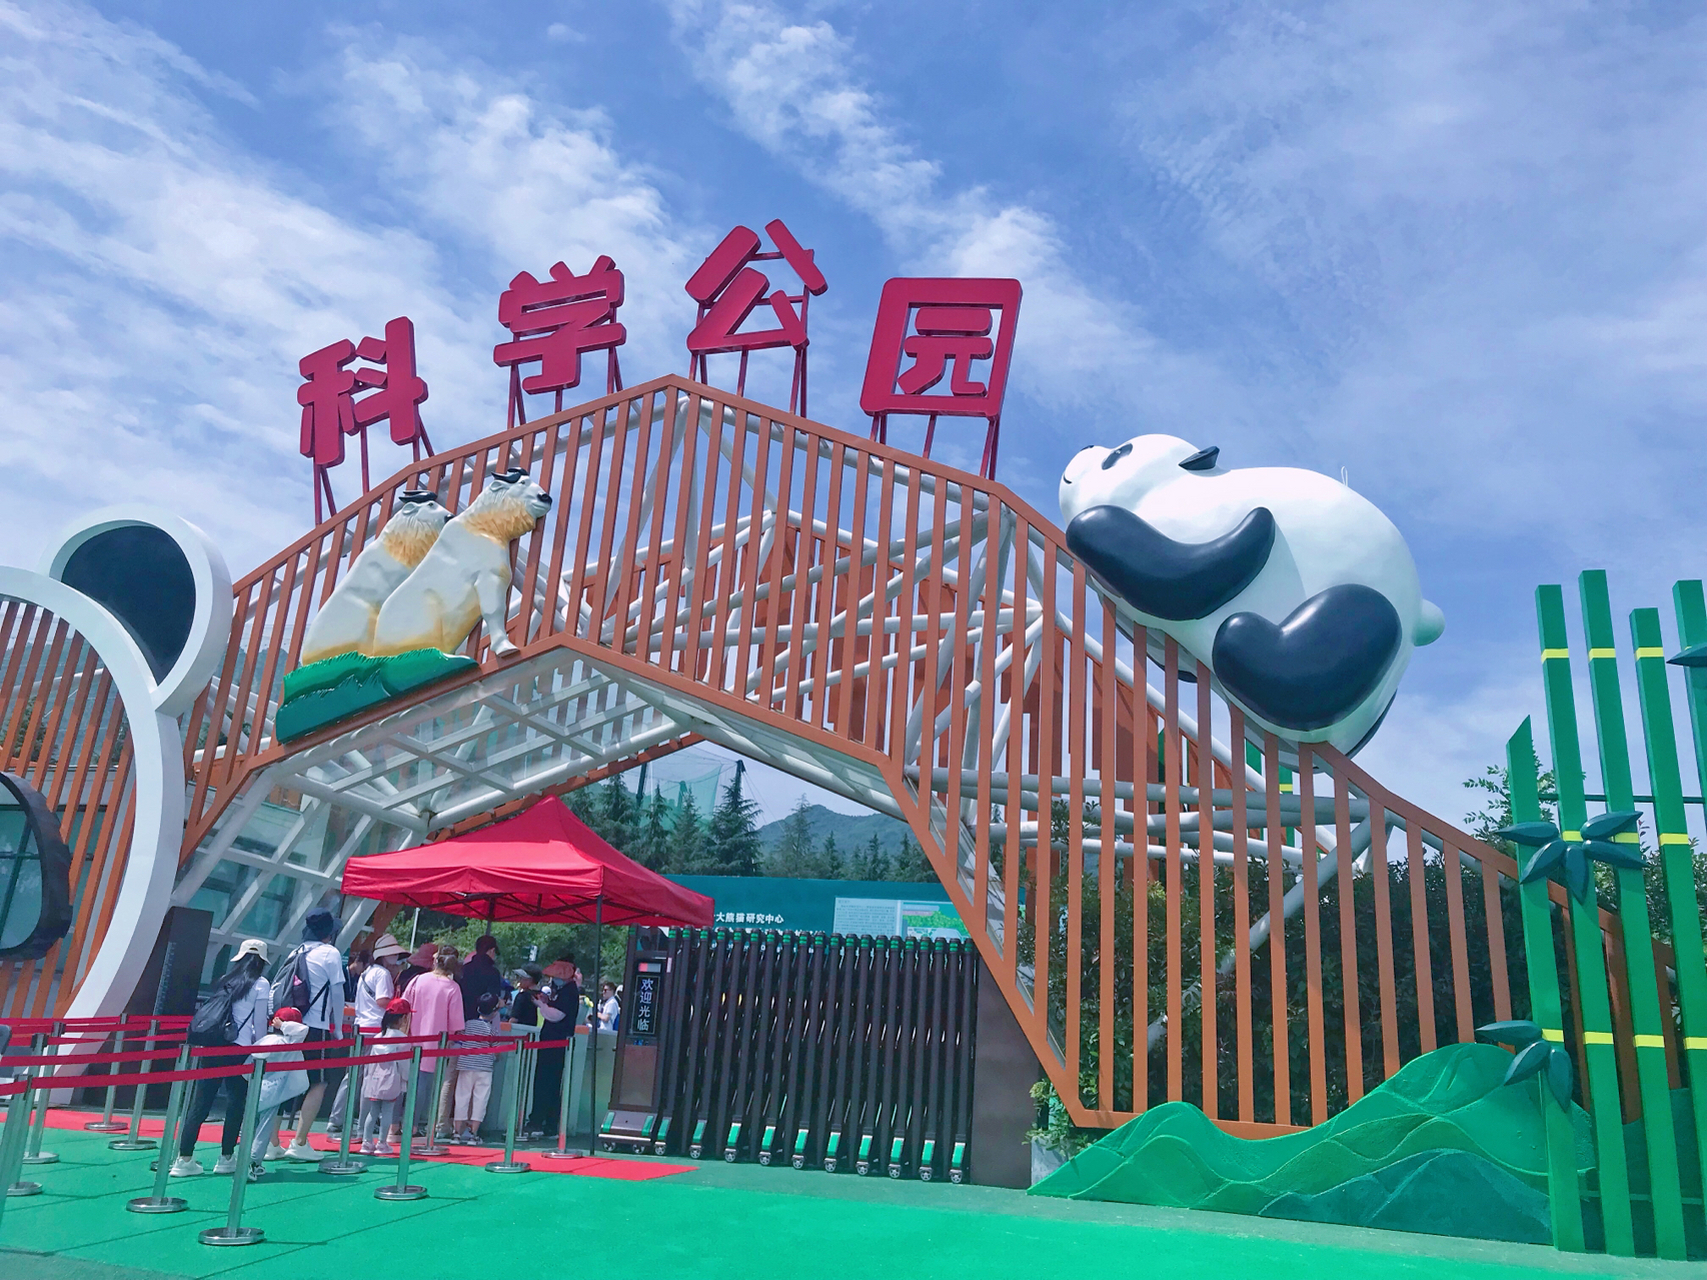 每周末都在想去哪里遛娃,前几天看到消息说秦岭大熊猫繁育中心5月28日